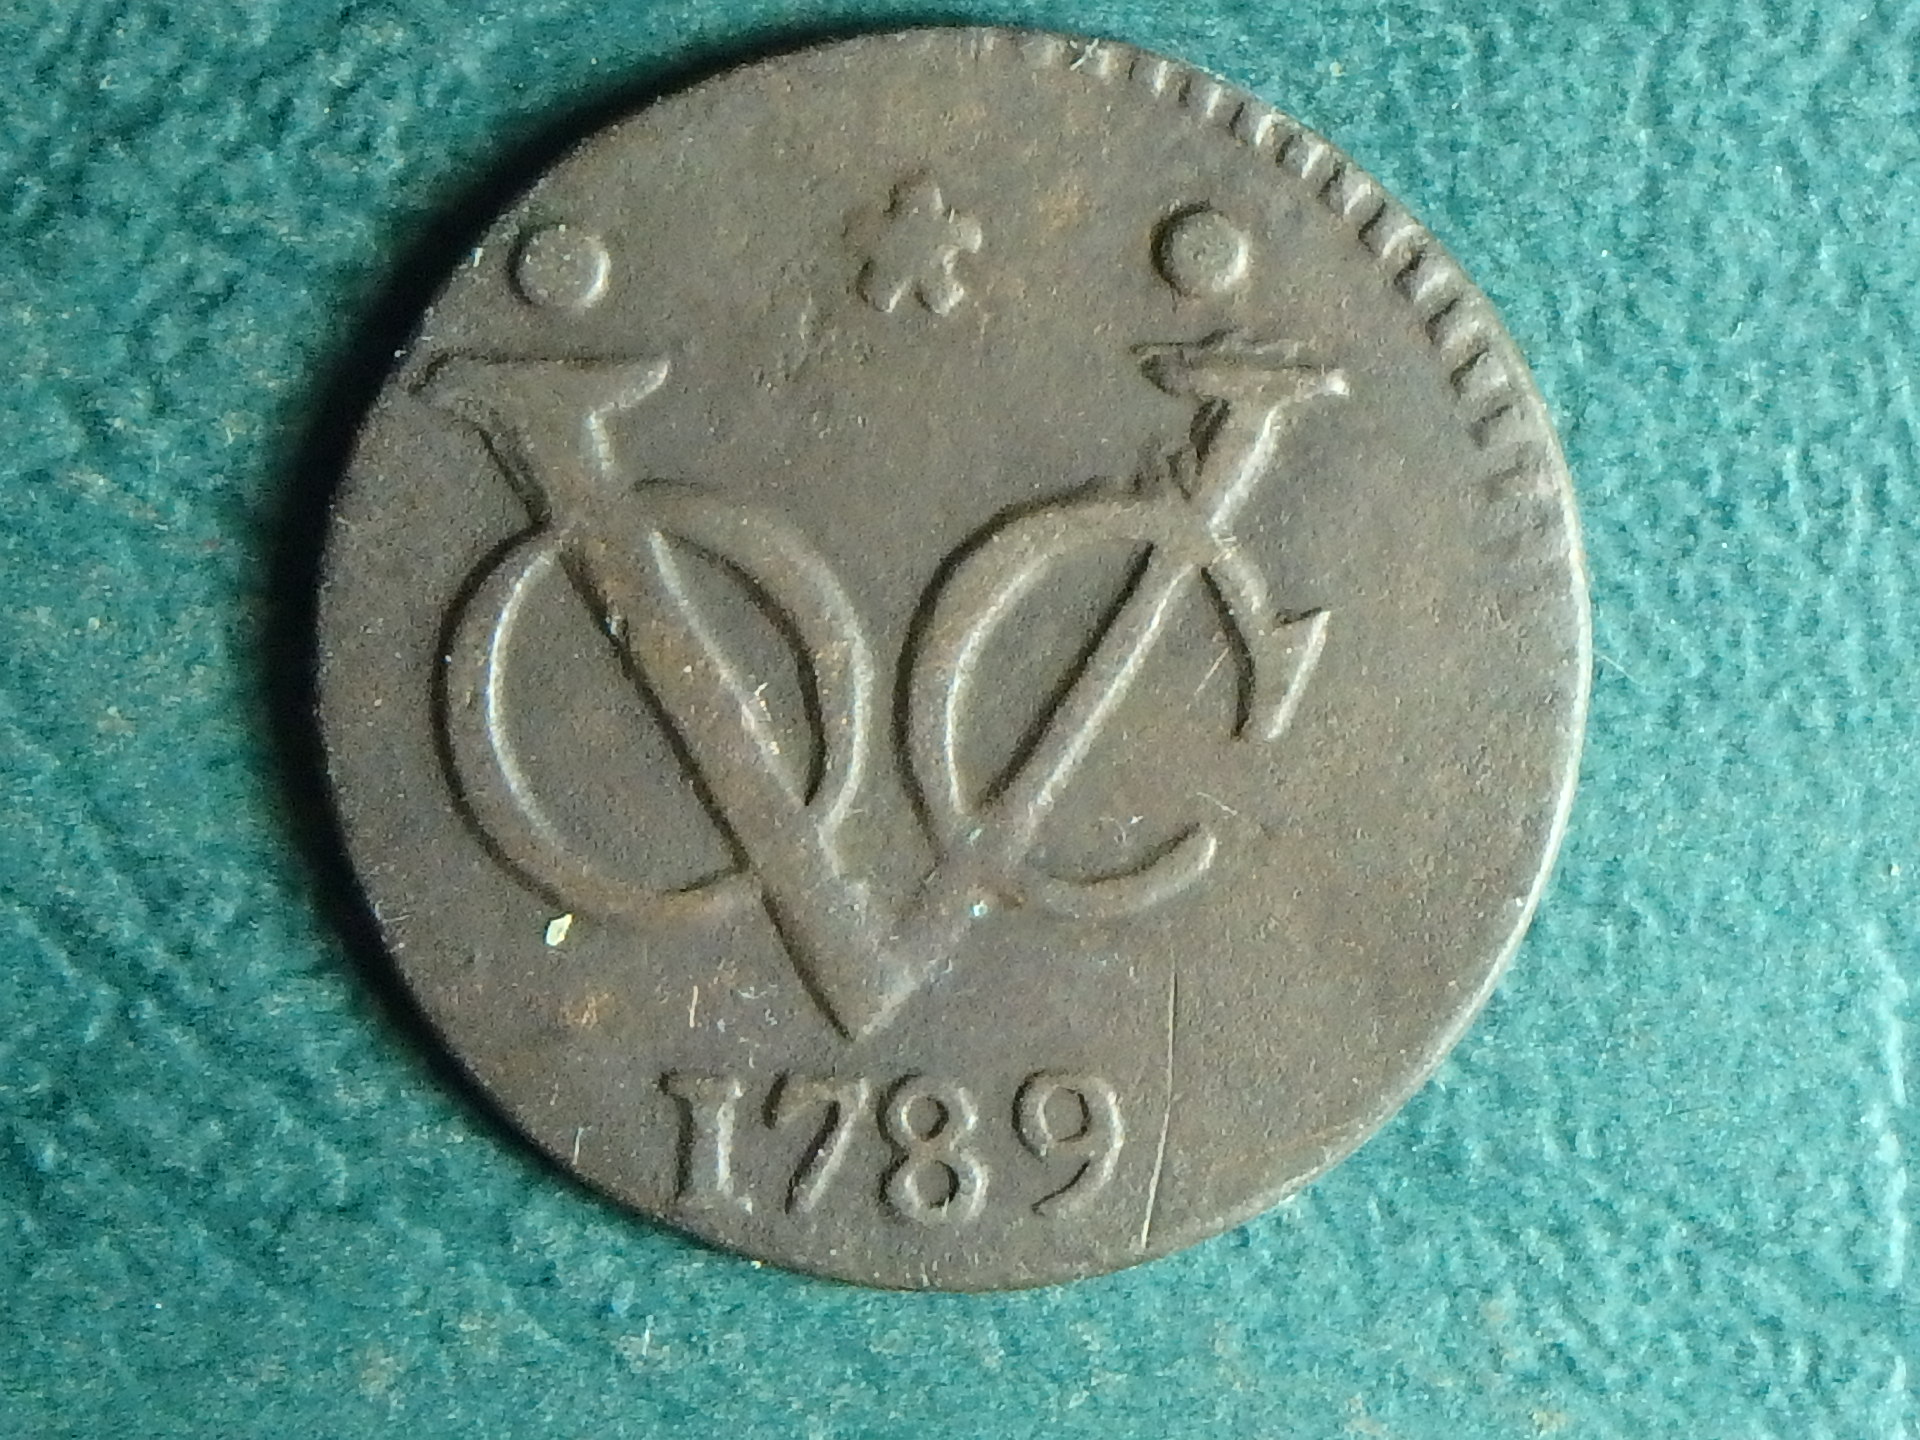 1789 WF VOC 1 d rev.JPG